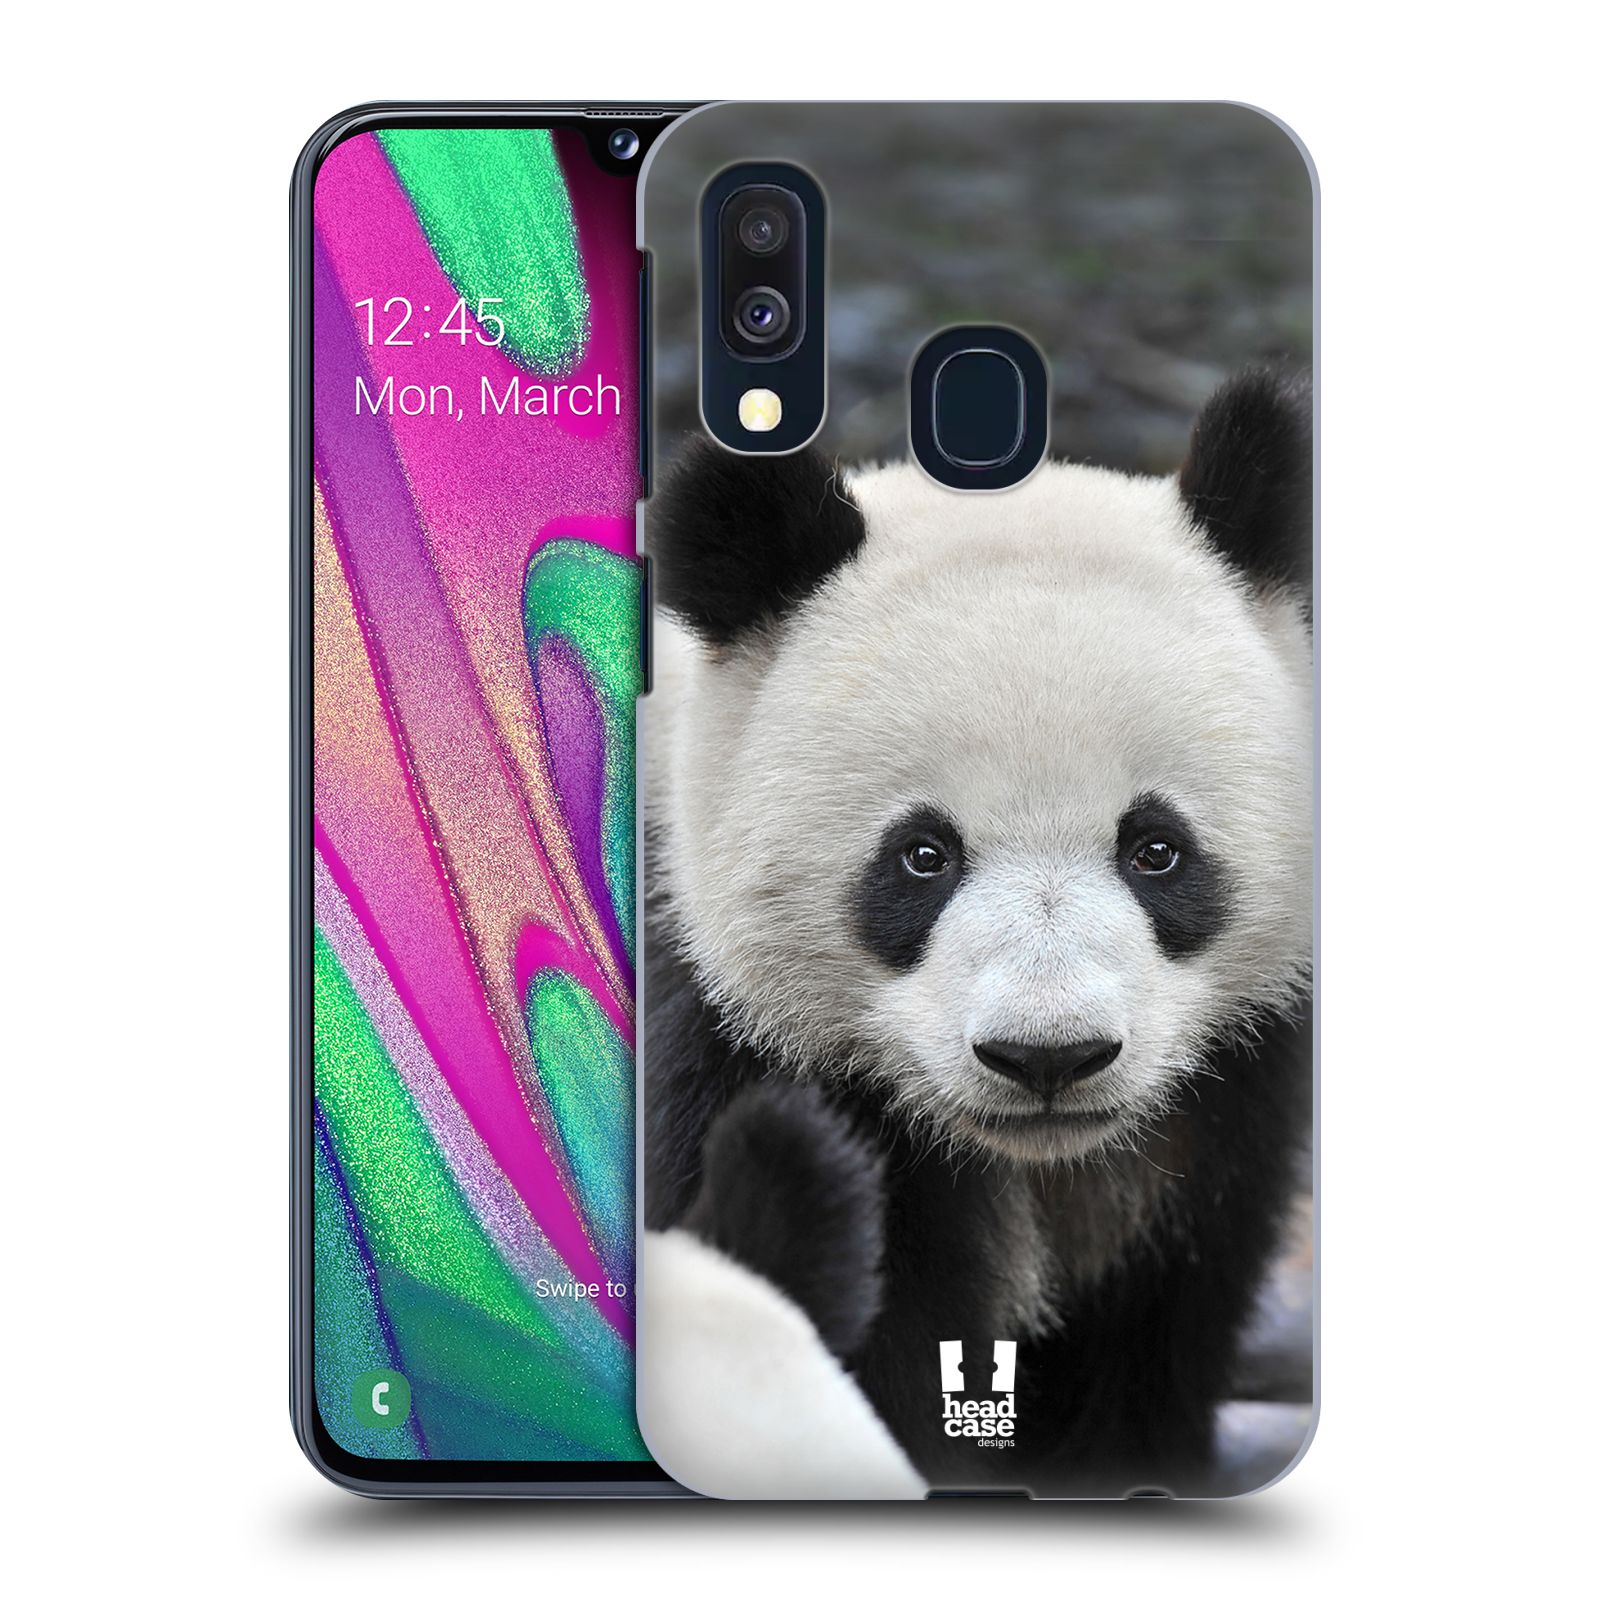 Zadní obal pro mobil Samsung Galaxy A40 - HEAD CASE - Svět zvířat medvěd panda